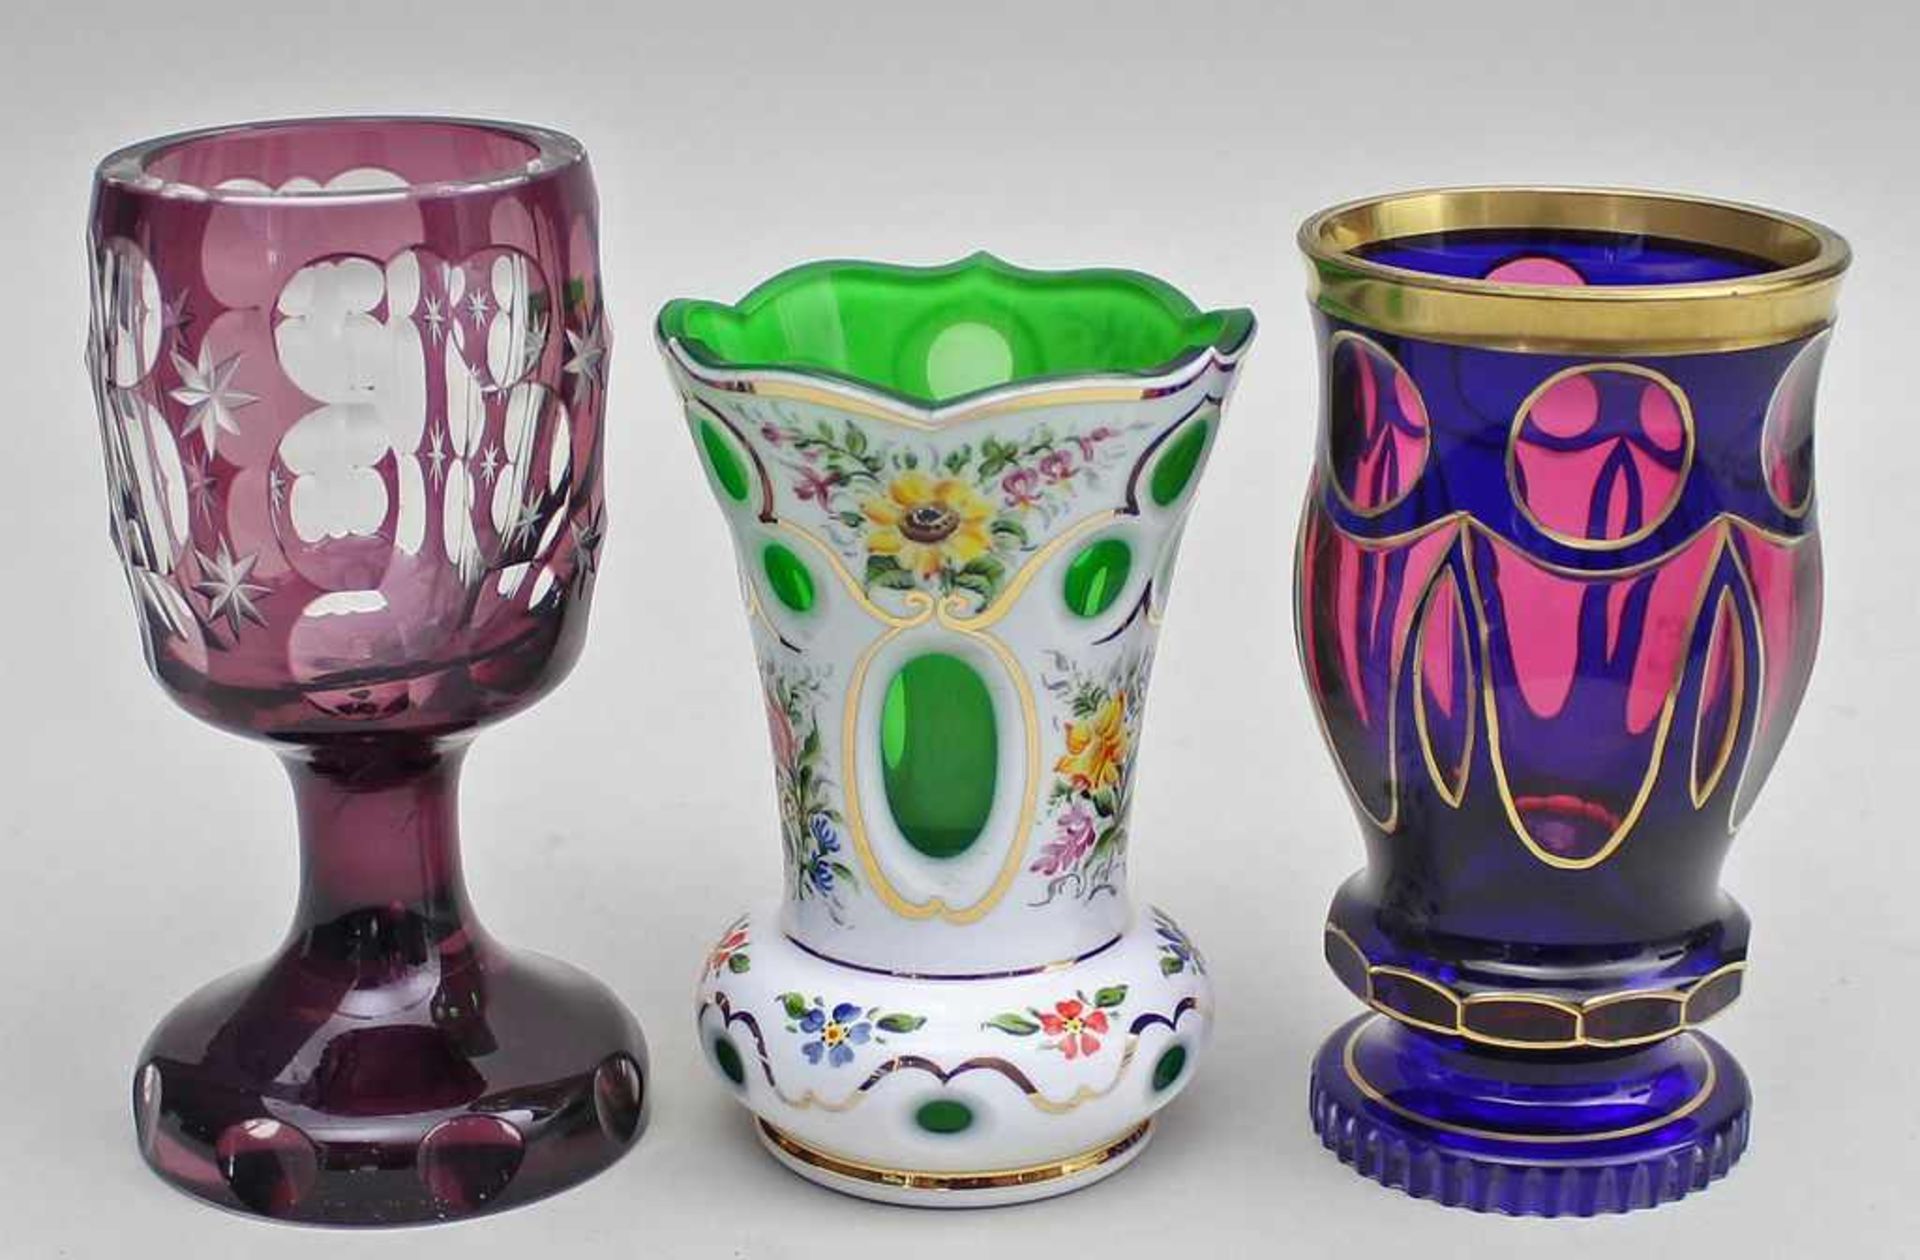 3 Becher/Vasen.Farbloses, hellgrünes und 1x rubinfarbenes Glas mit verschiedenfarbigem Überfang